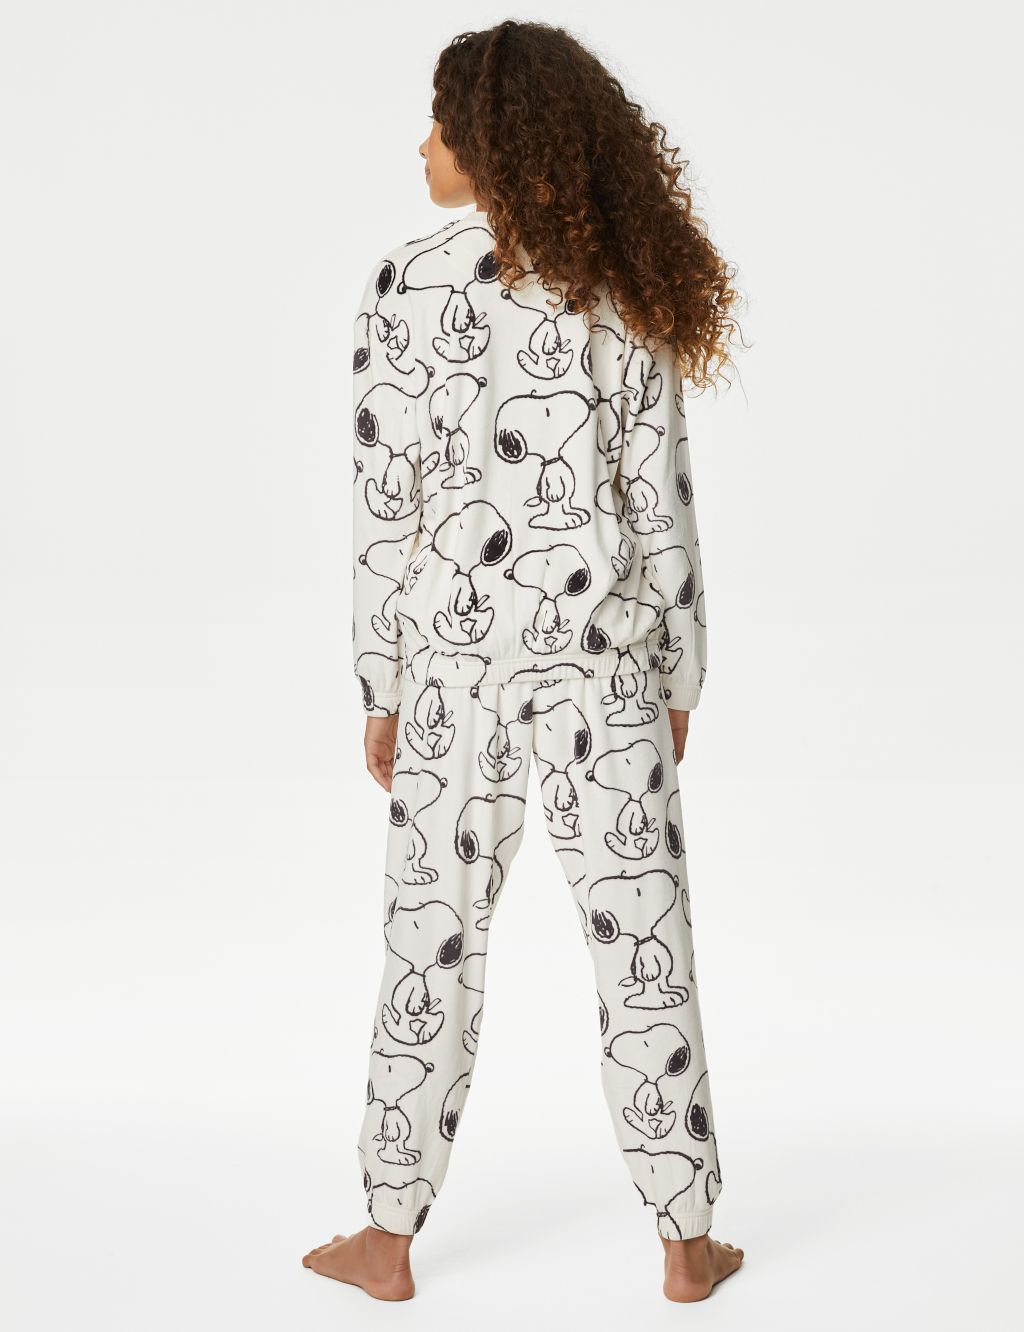 Snoopy™ Pyjamas (6-16 Yrs) image 3